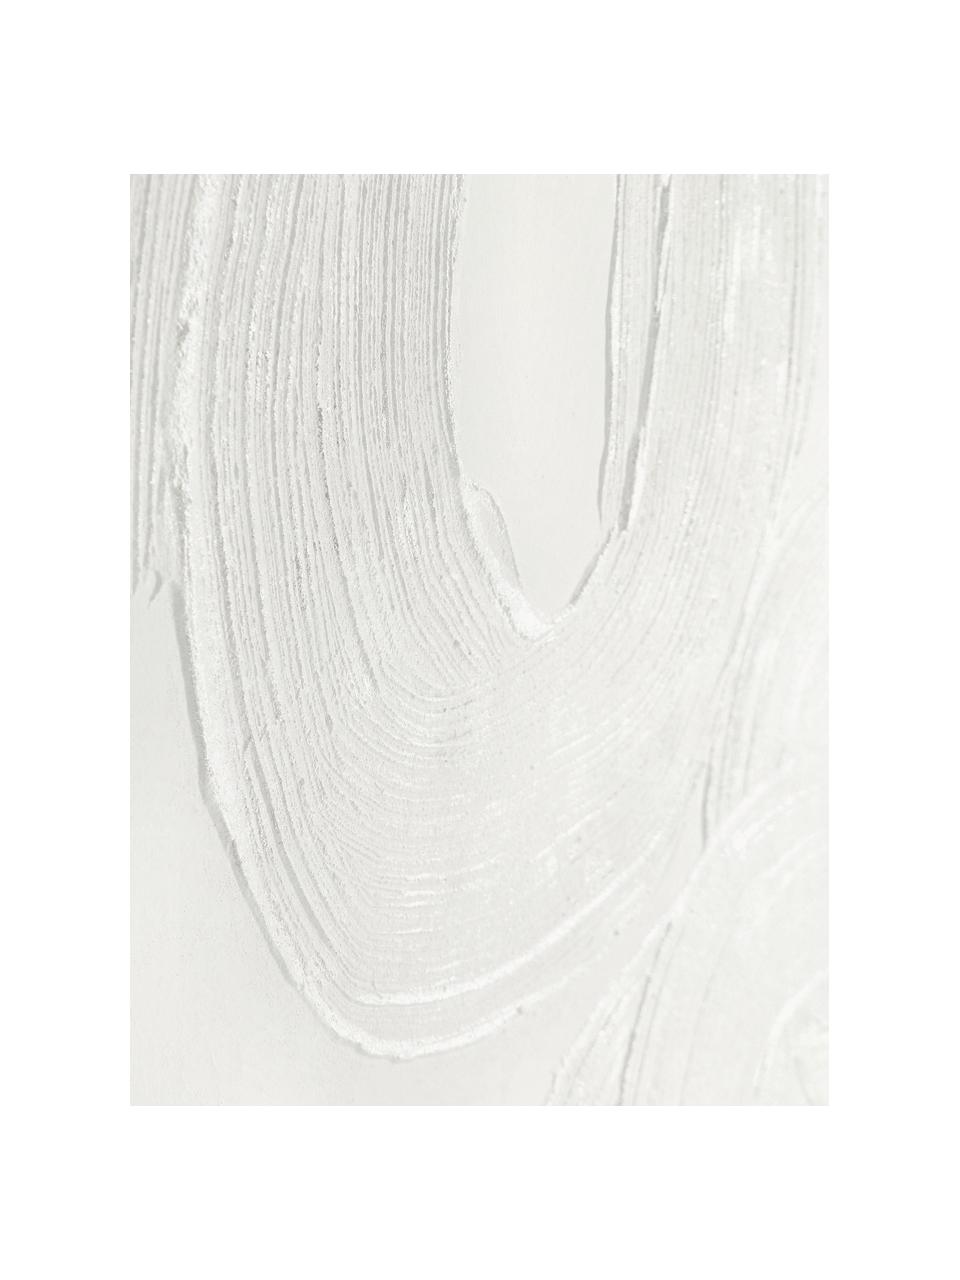 Obraz na płótnie Texture, Biały, S 90 x W 120 cm